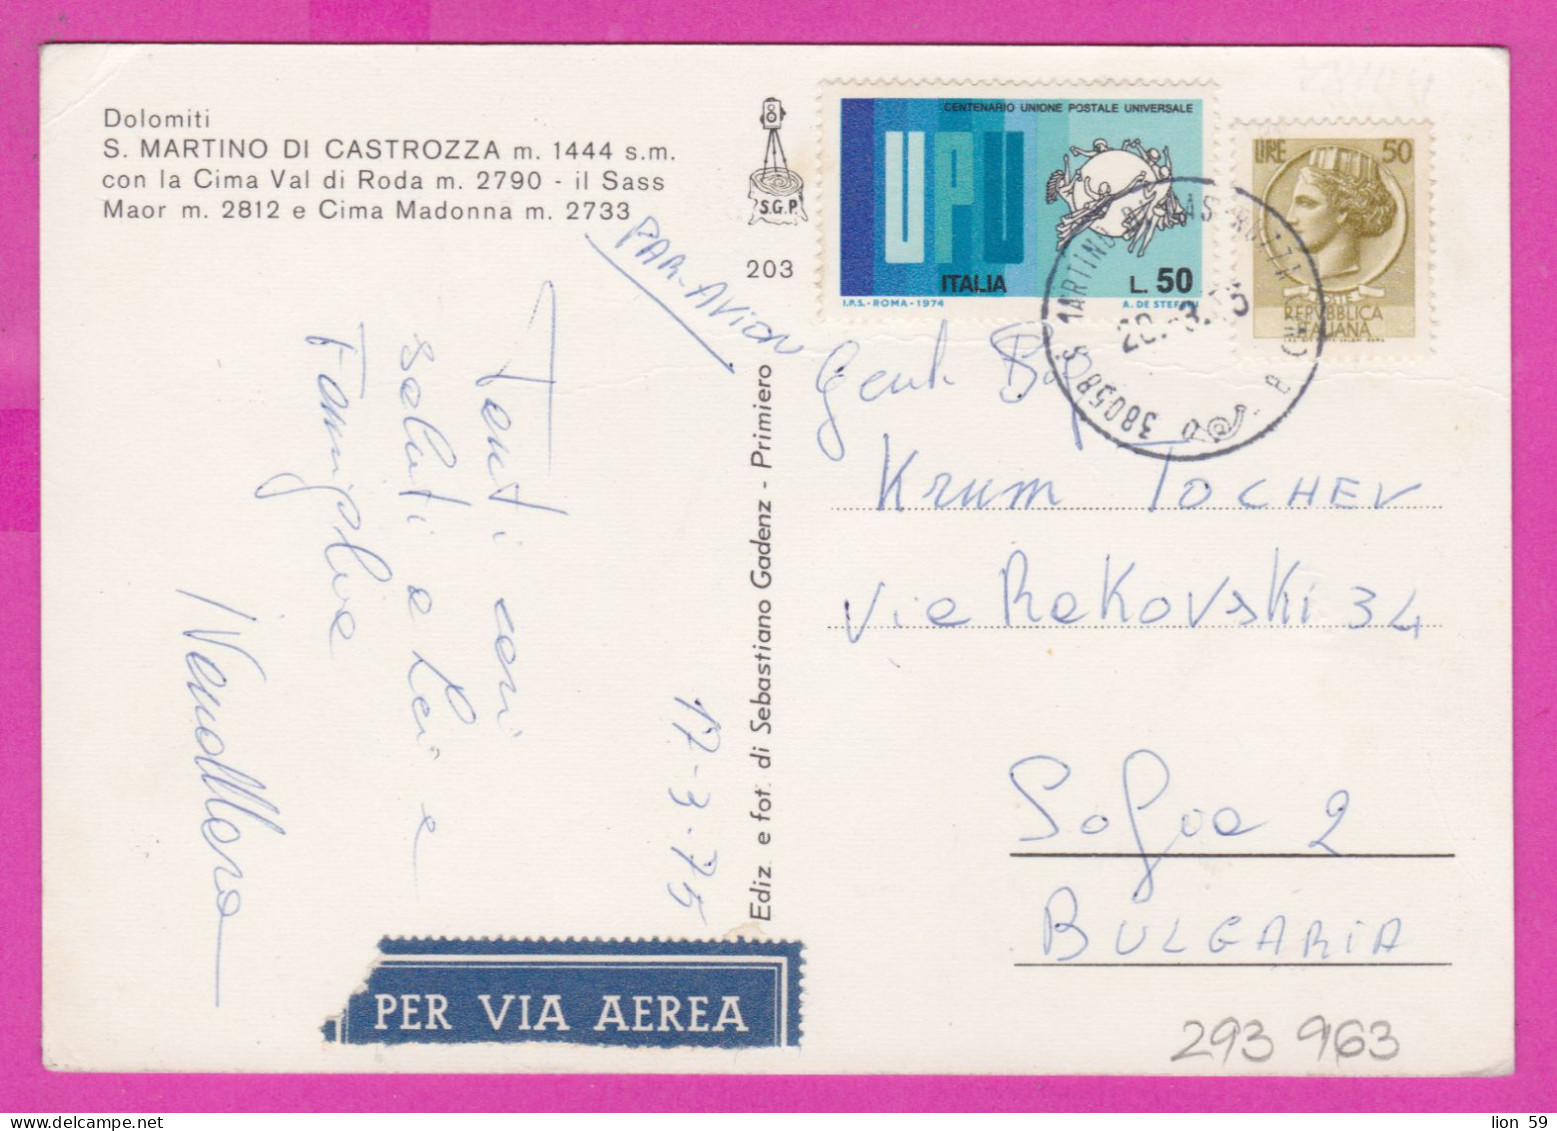 293963 / Italy - Dolomiti S. MARTINO DI CASTROZZA   PC 1975 Per Via Aerea USED 50+50 L Coin Of Syracuse UPU U.P.U. - 1971-80: Marcofilia